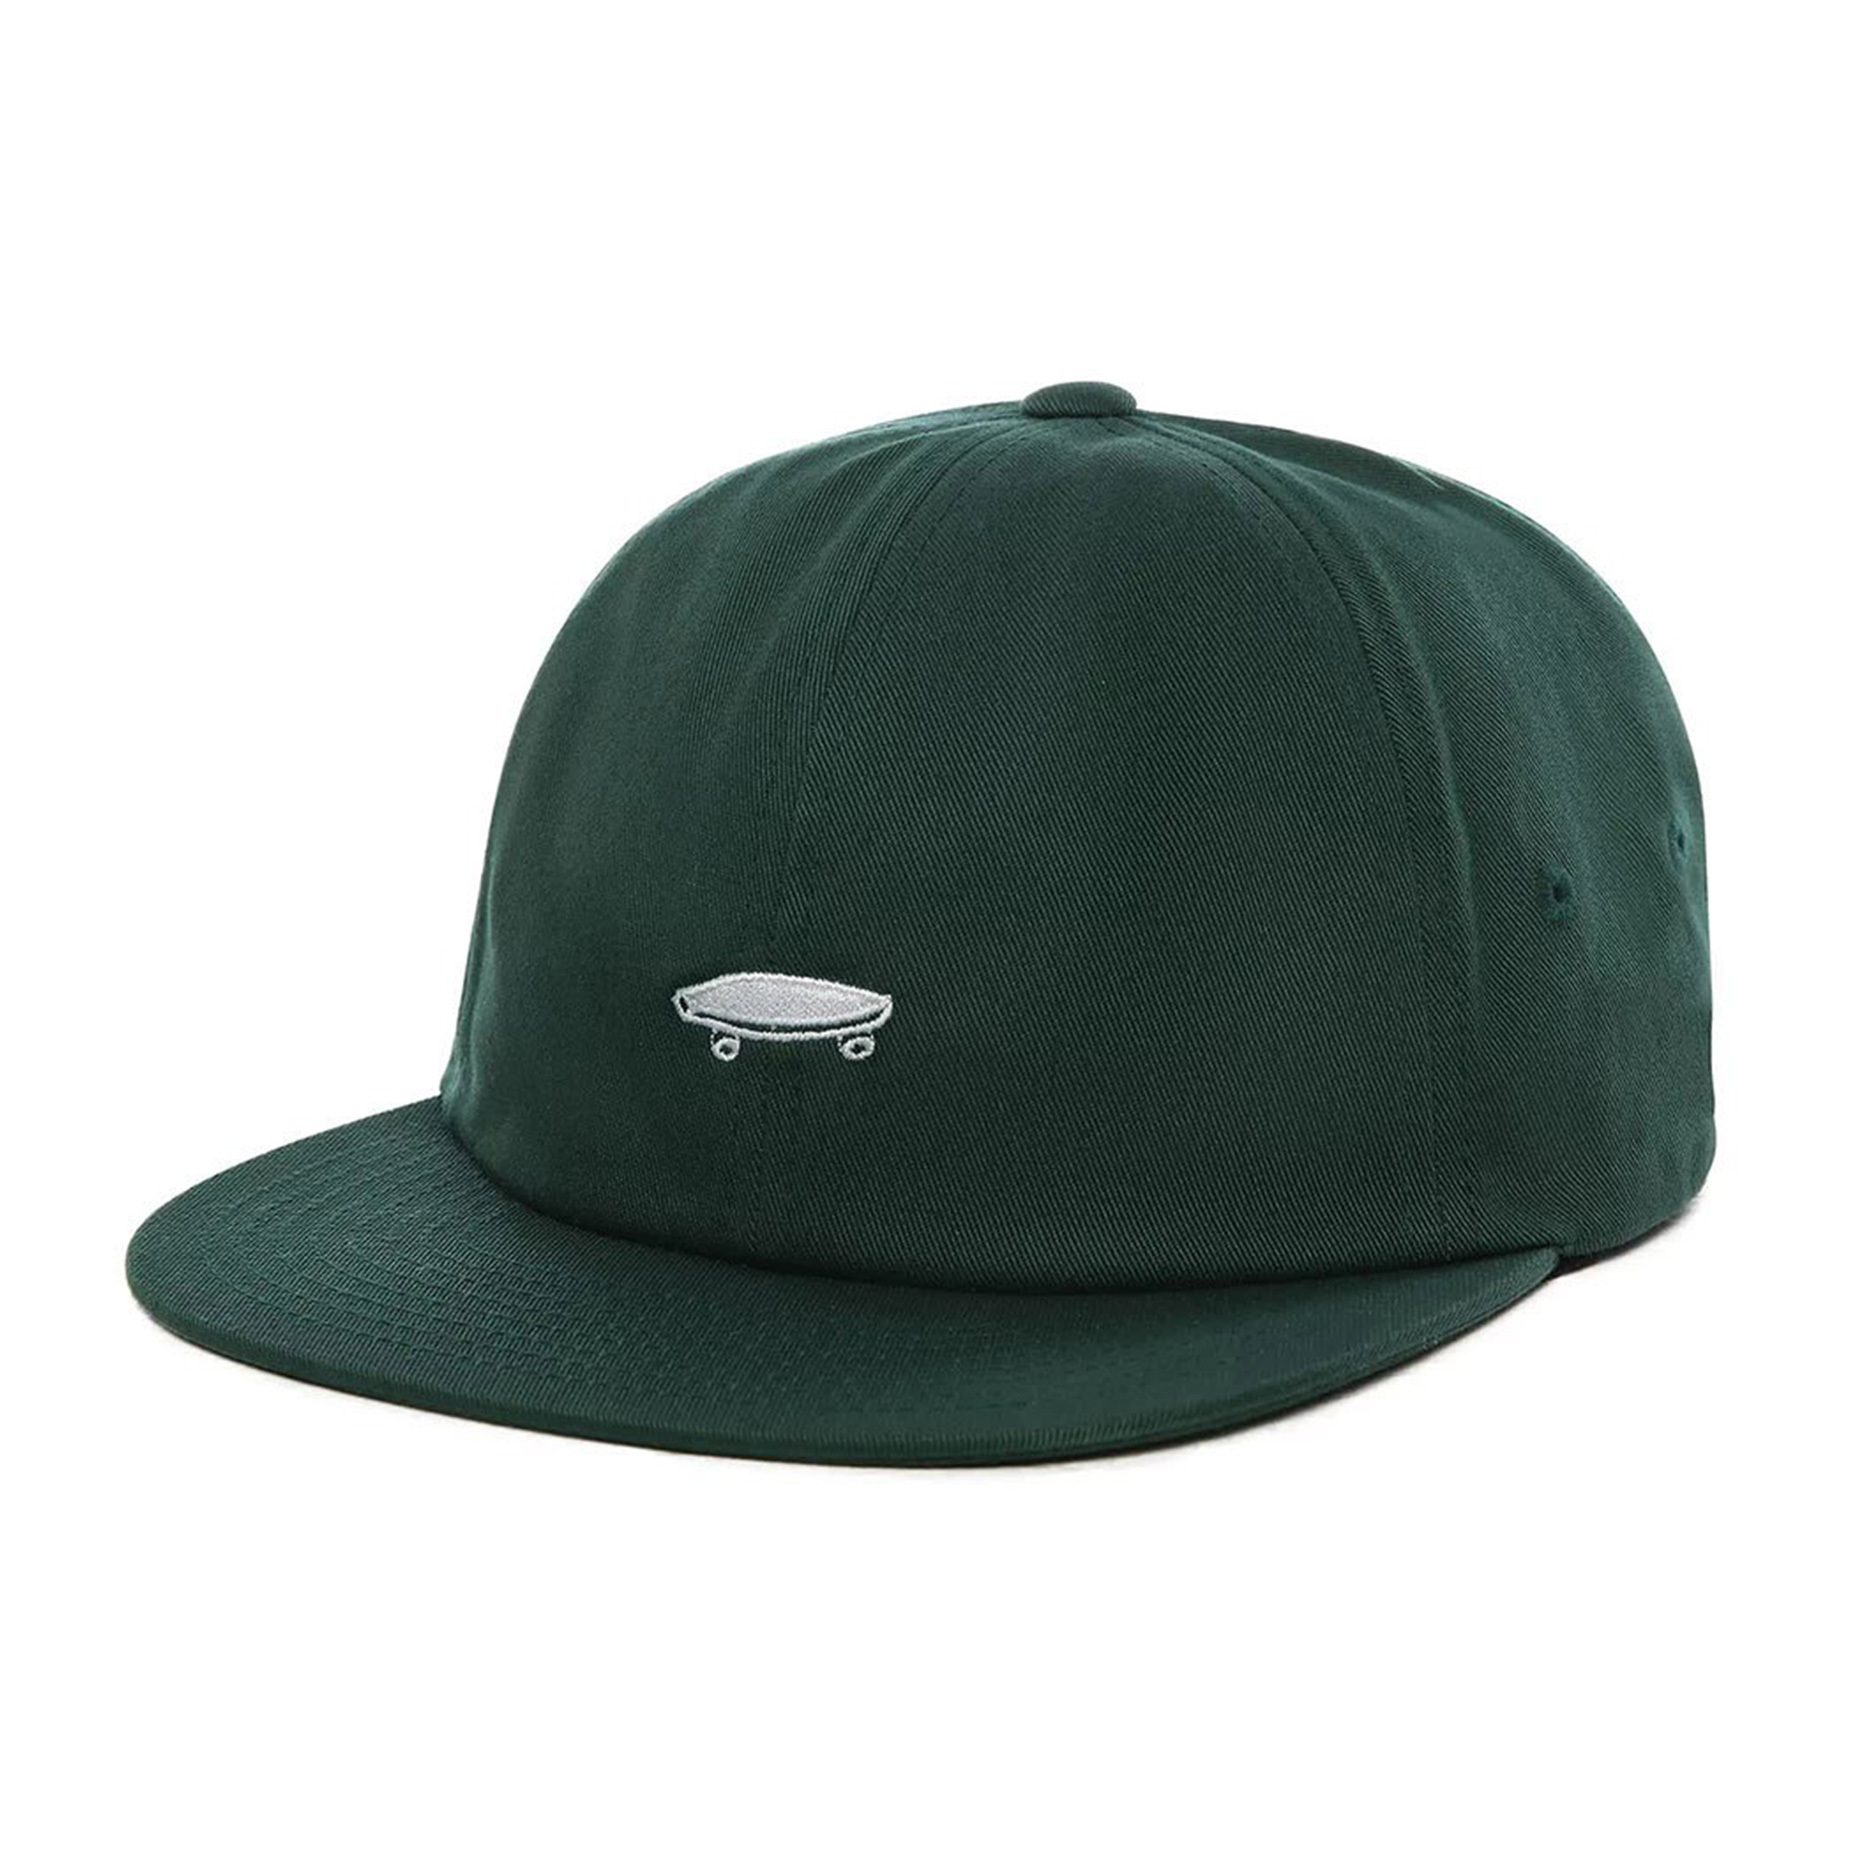 green vans hat